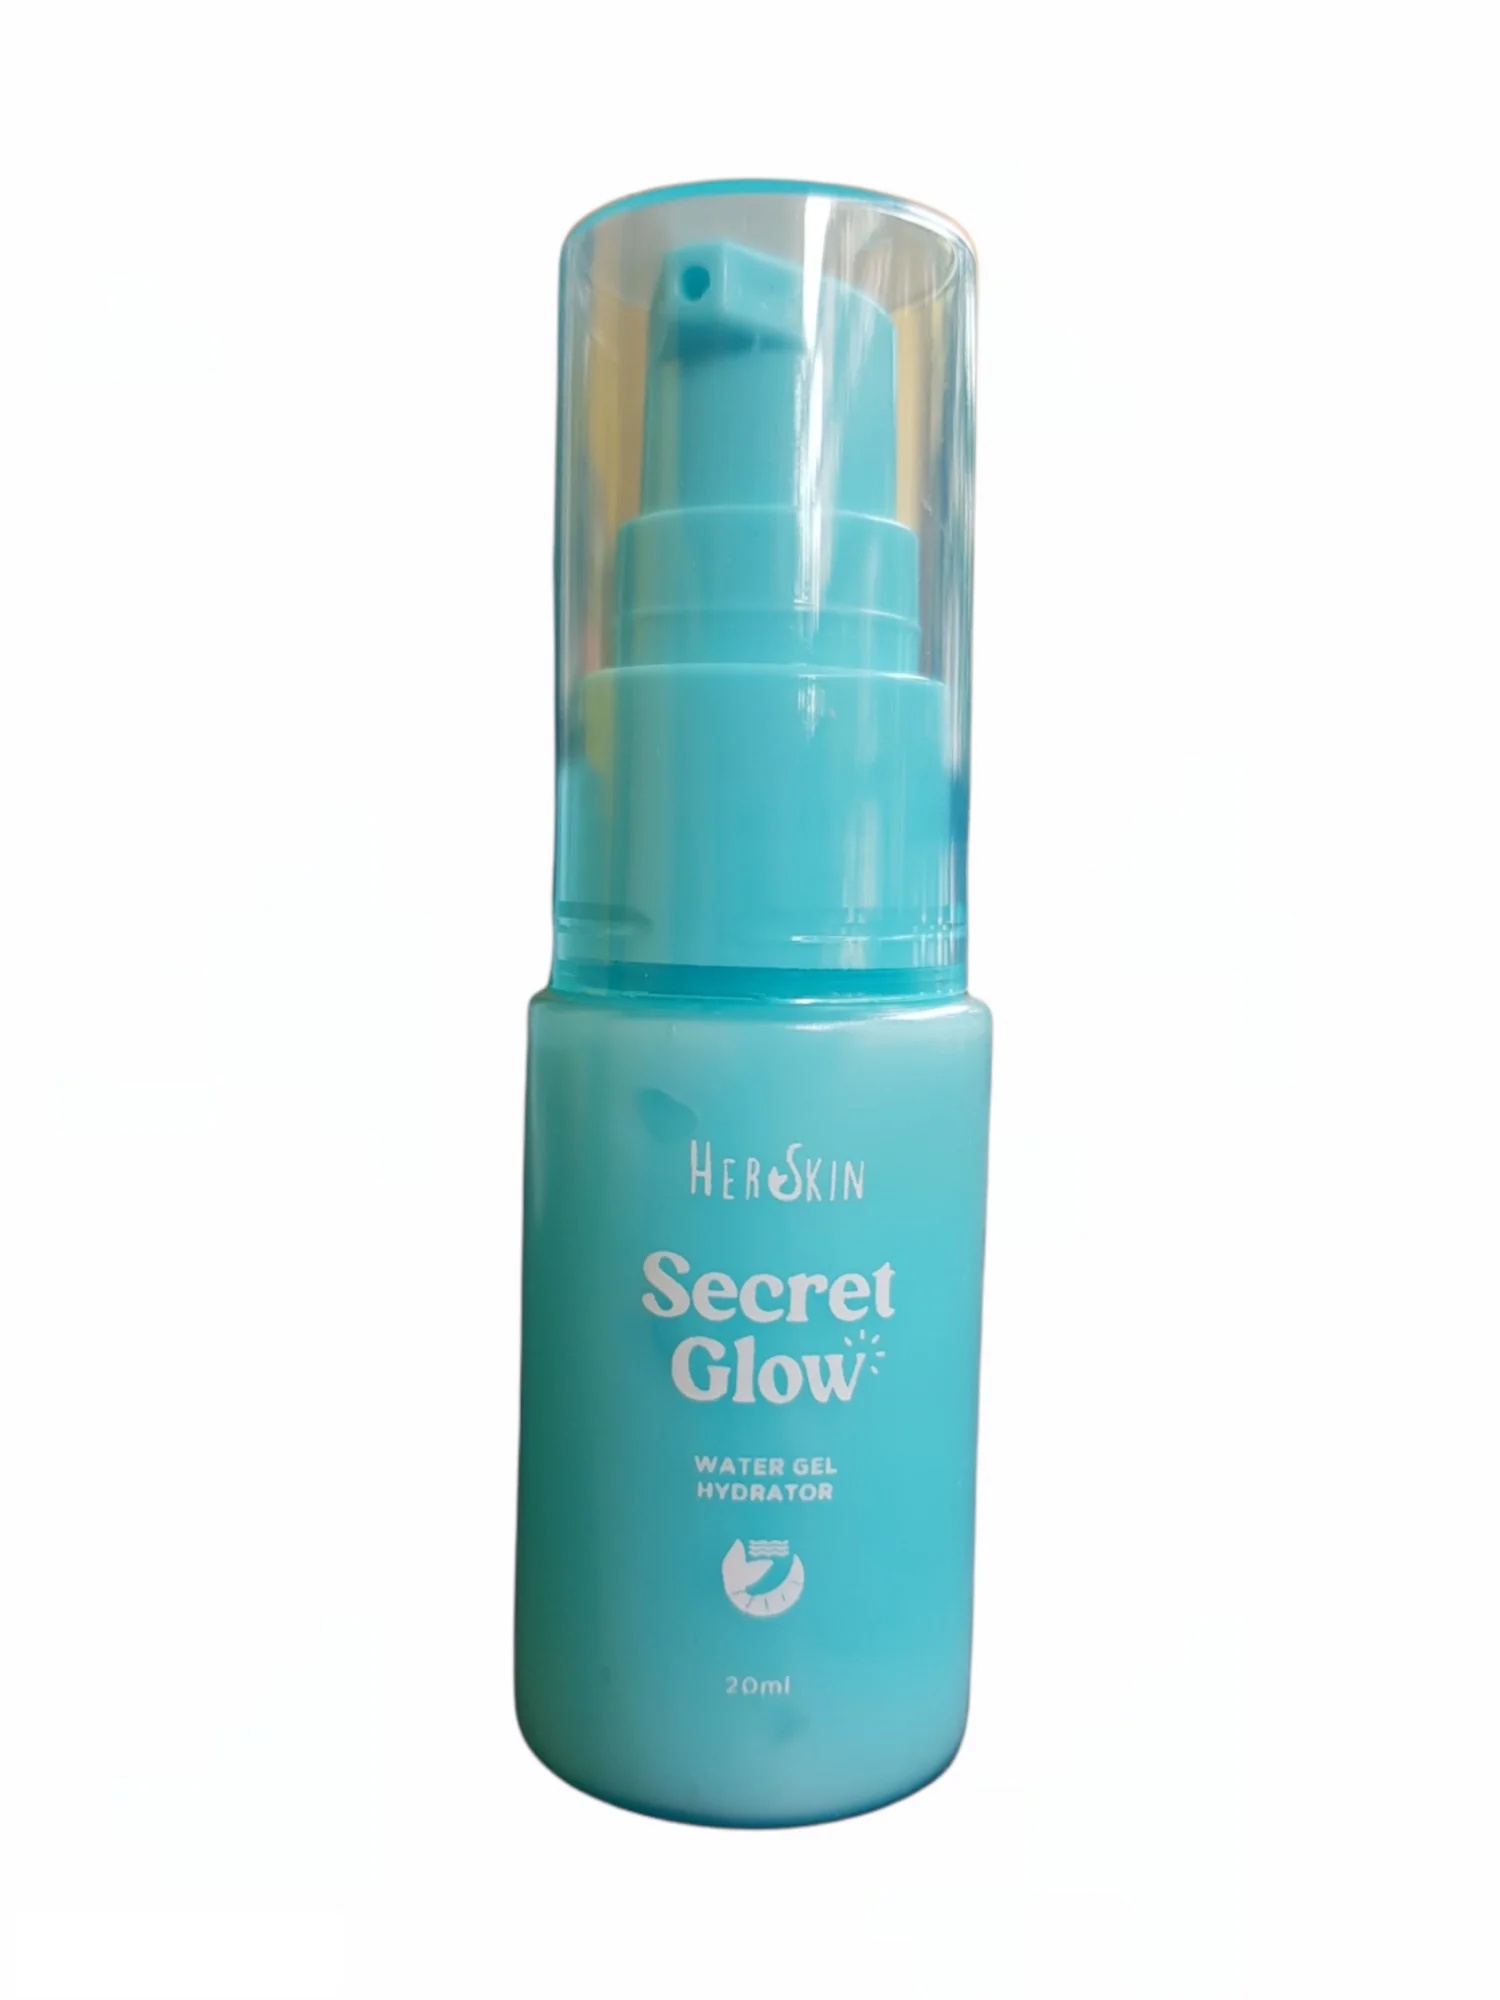 Her Skin Secret Glow Water Gel Hydrator